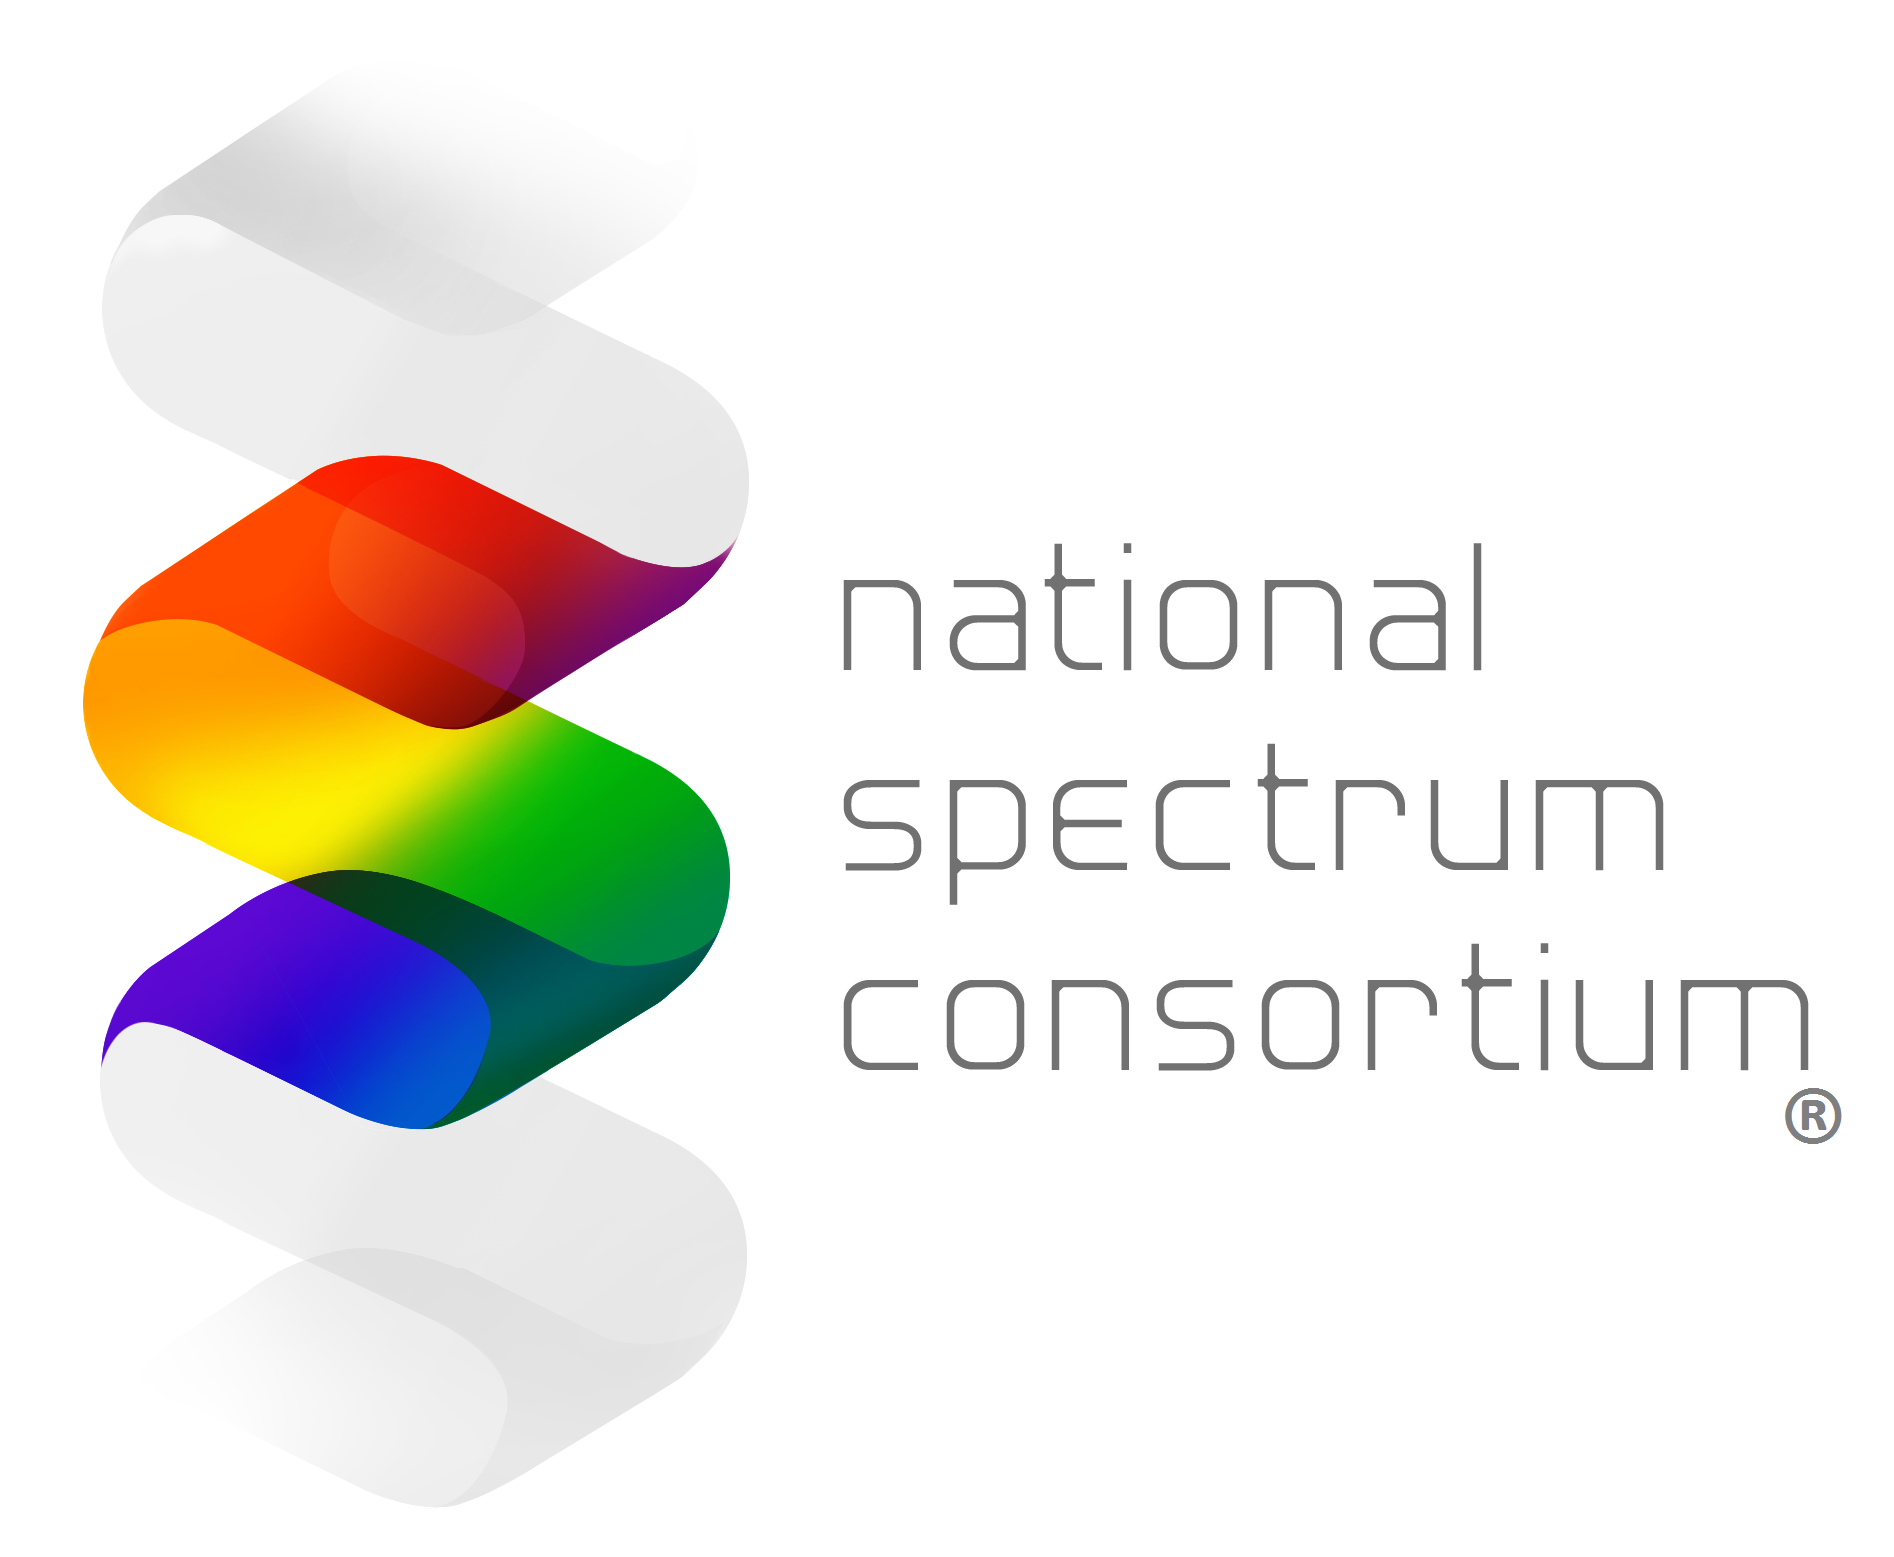 National Spectrum Consortium